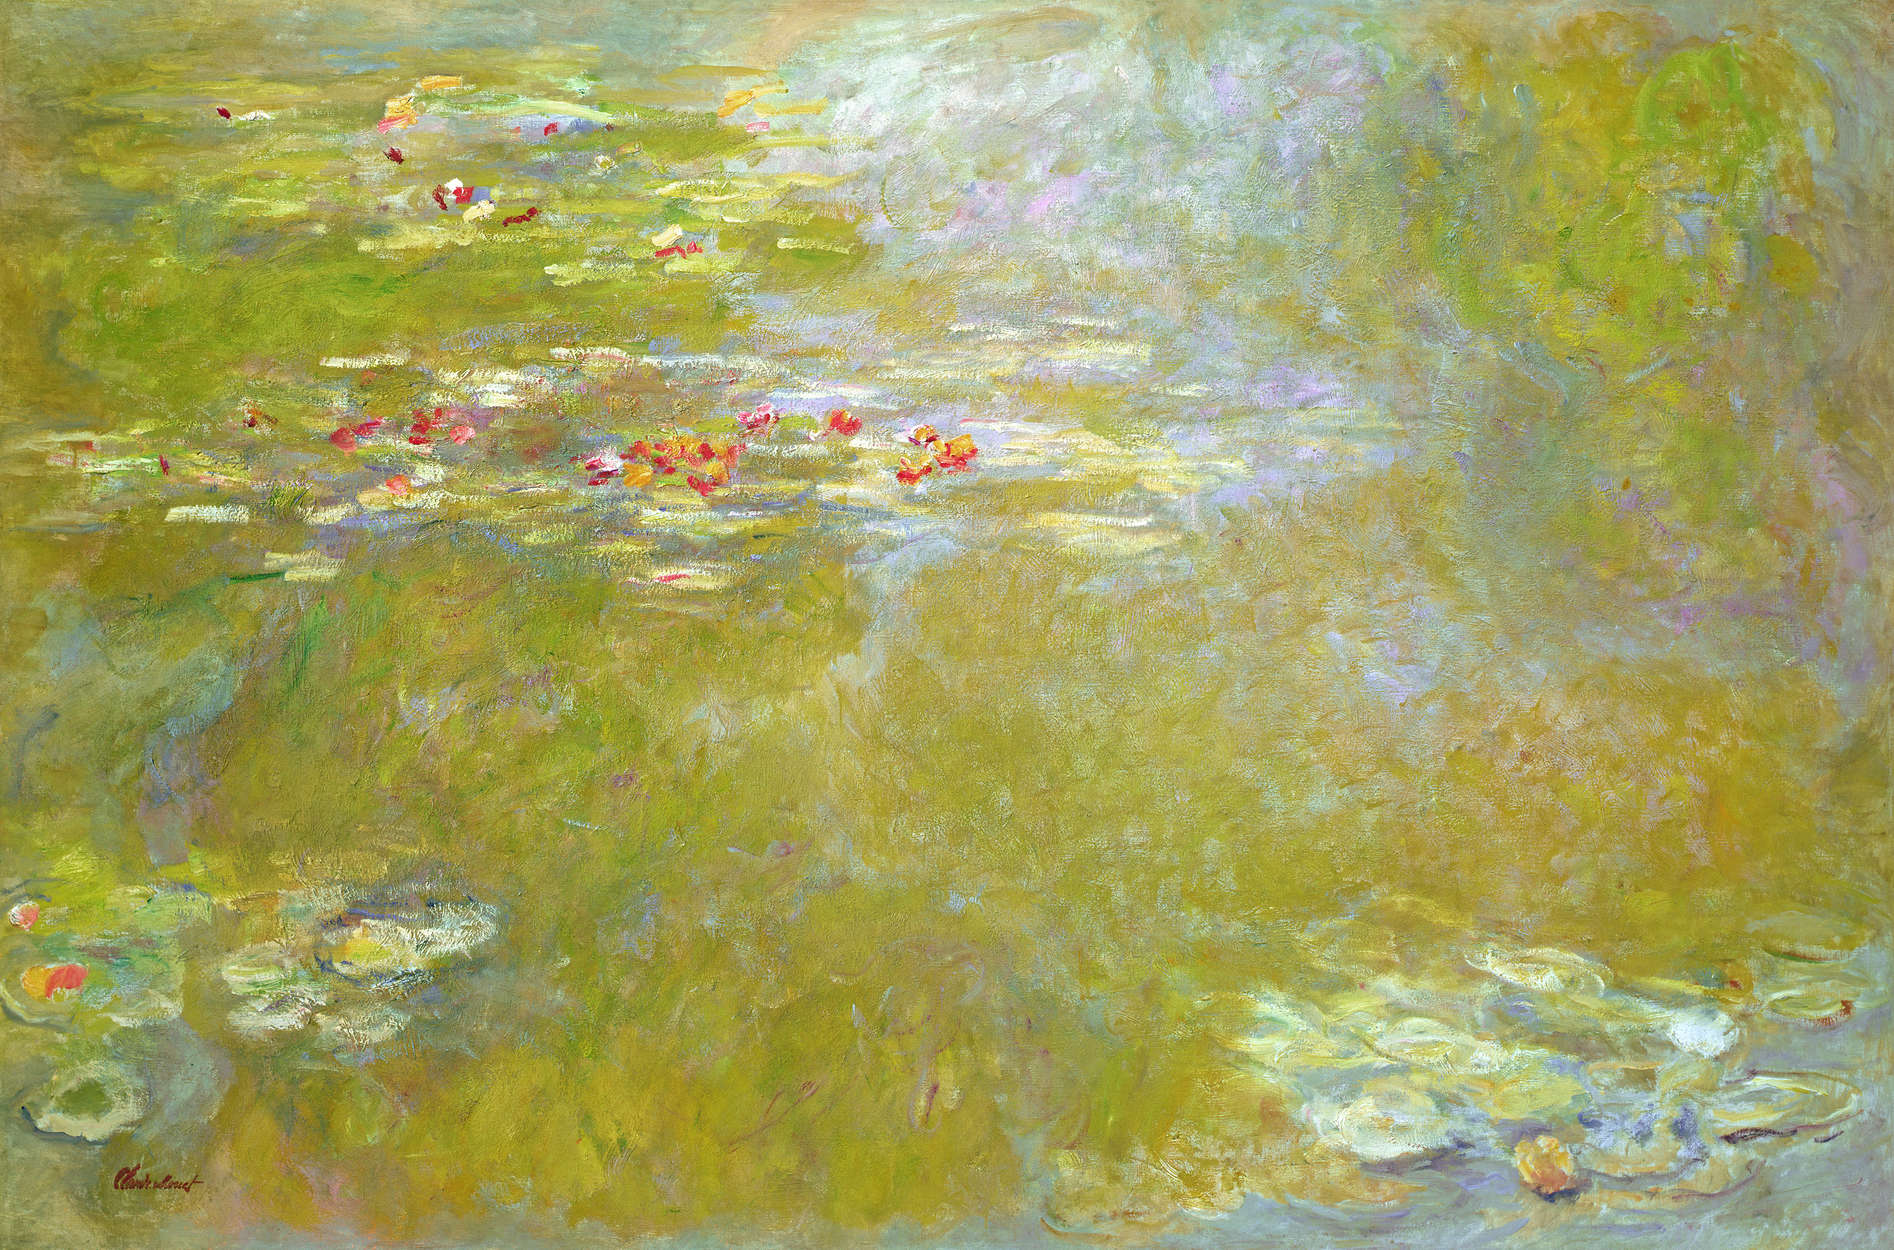             Fototapete "Die Nymphen" von Claude Monet
        